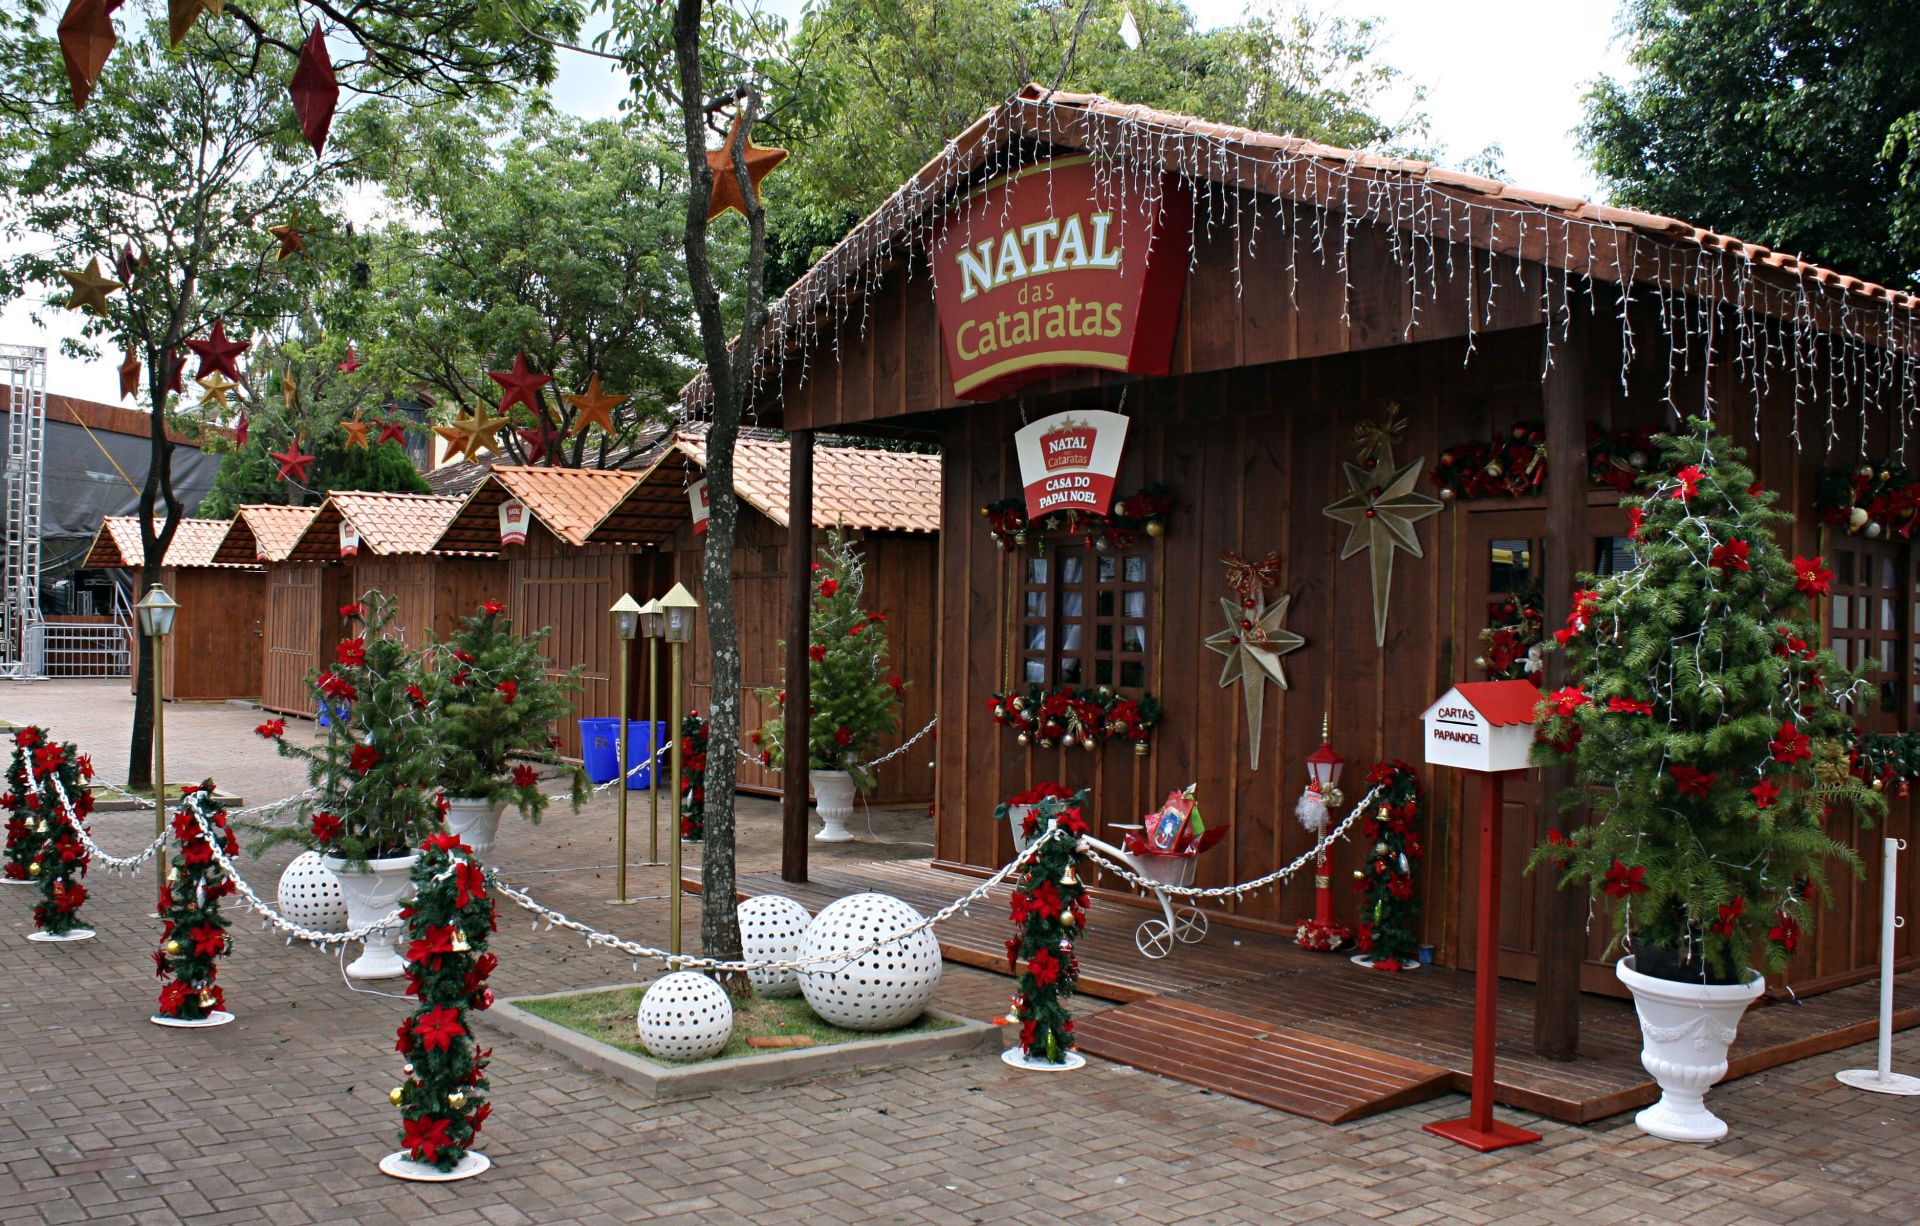 Destinos nacionais para apreciar as decorações de fim de ano | Foz do Iguaçu | Conexão123